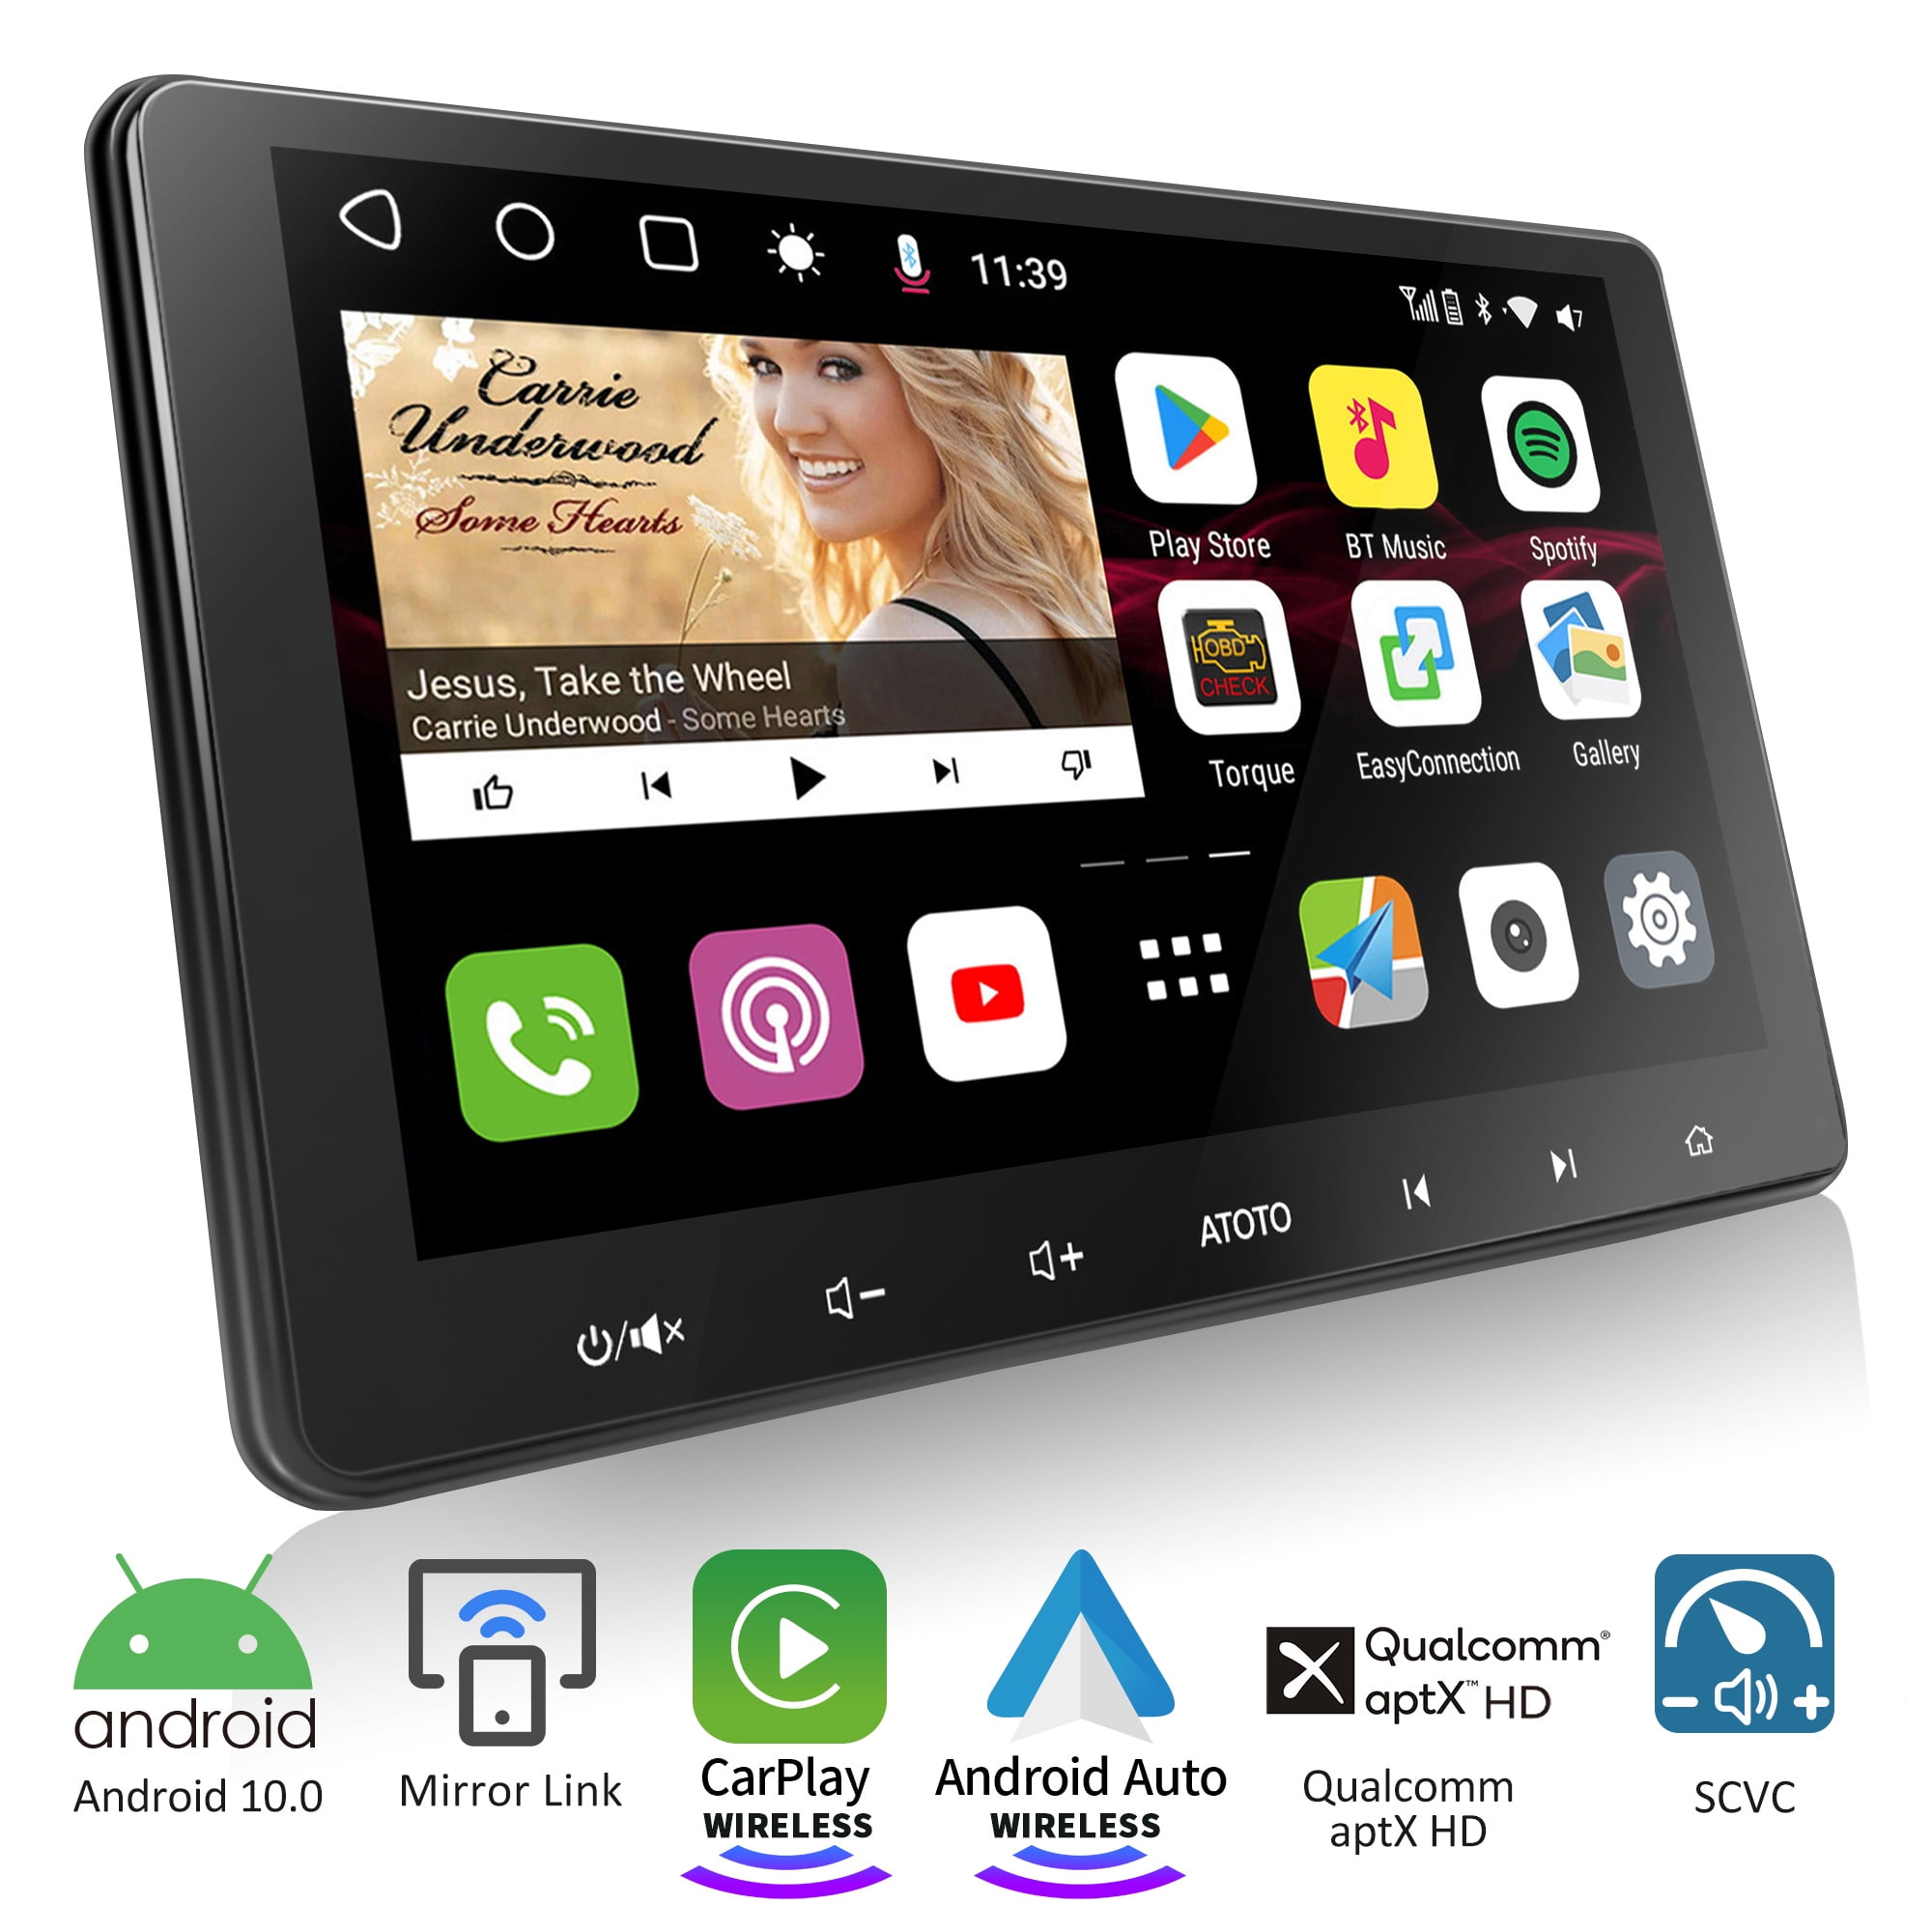 ATOTO - 🚘🍂👏ATOTO S8 Premium 10.1in Android car radio is